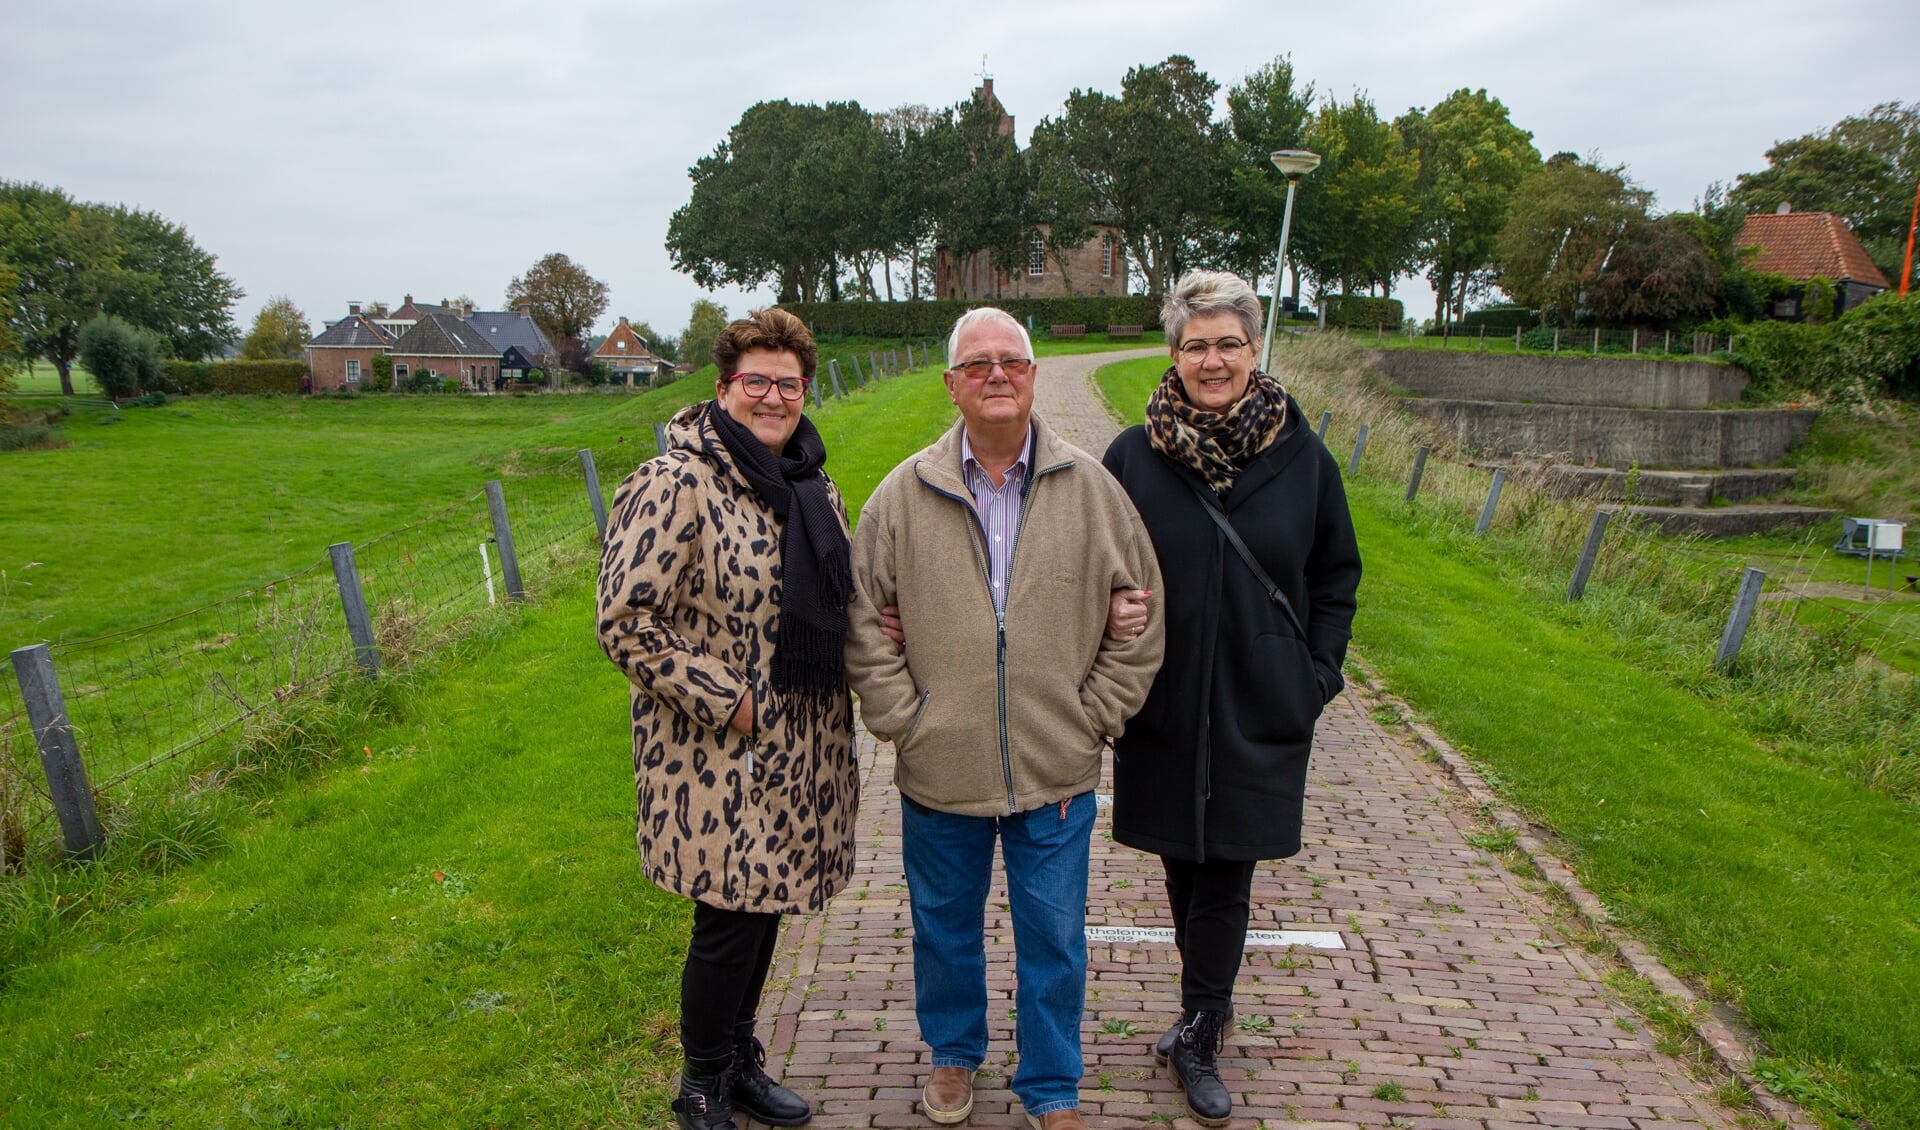 De organisatoren Afke Kramer-Atsma (links) en  Liesbeth Sijtsma (rechts) met in het midden de voorzitter van Stichting Terp Hegebeintum, Rits van der Ploeg.